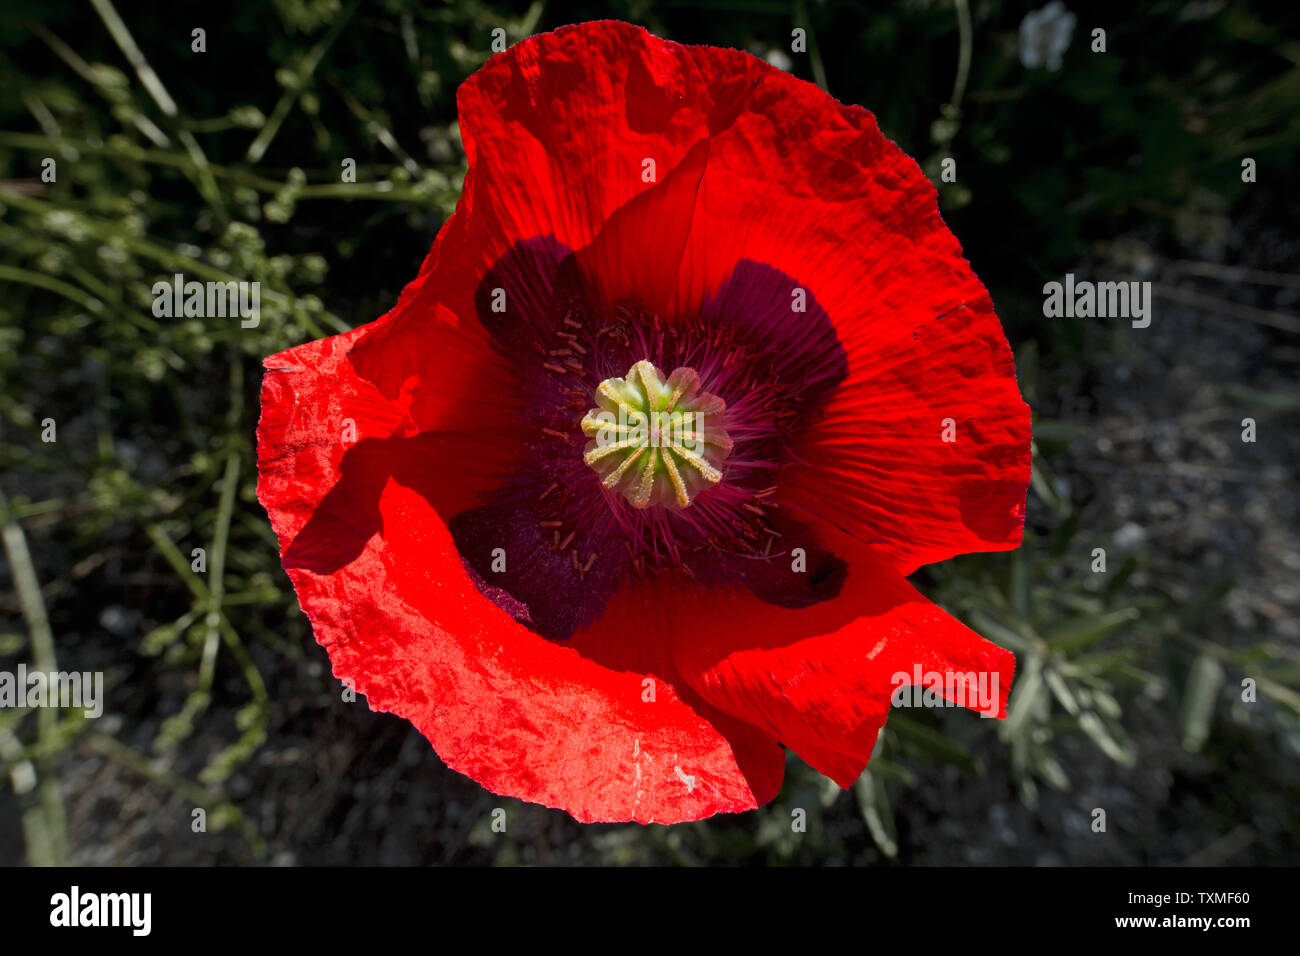 Vista superior de la flor roja de la amapola Foto de stock